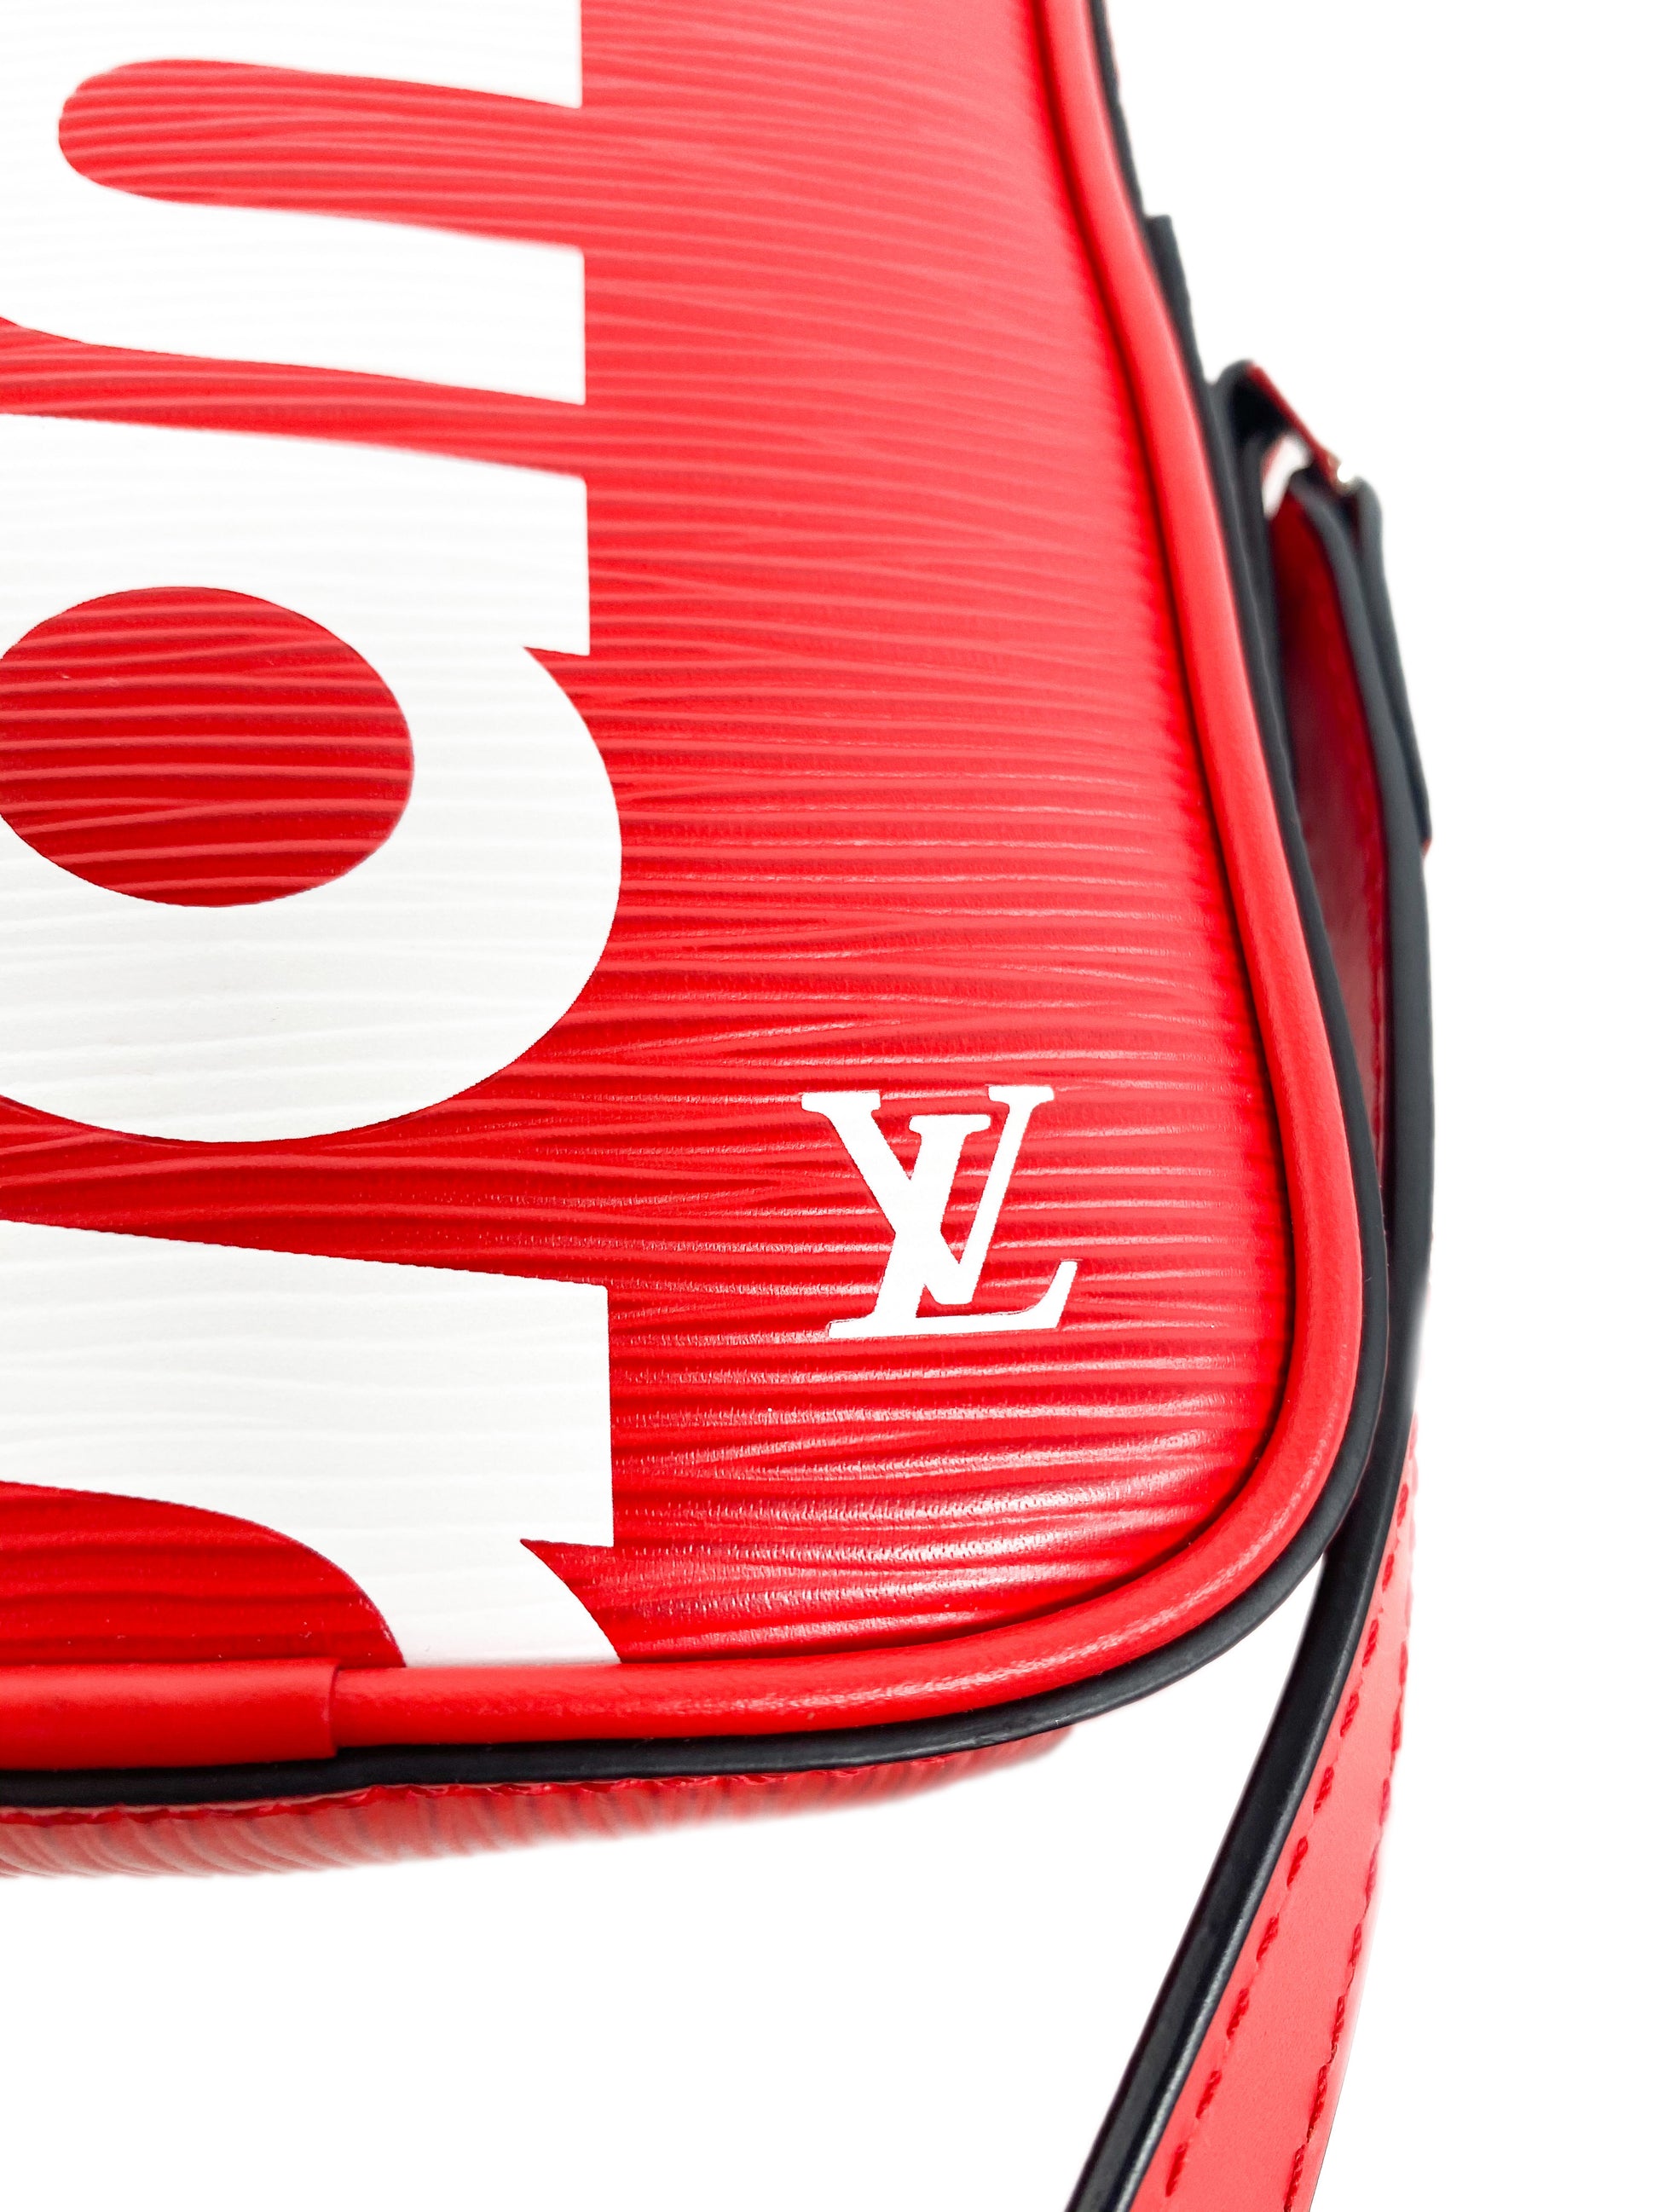 Louis Vuitton x Supreme Danube EPI ppm Red